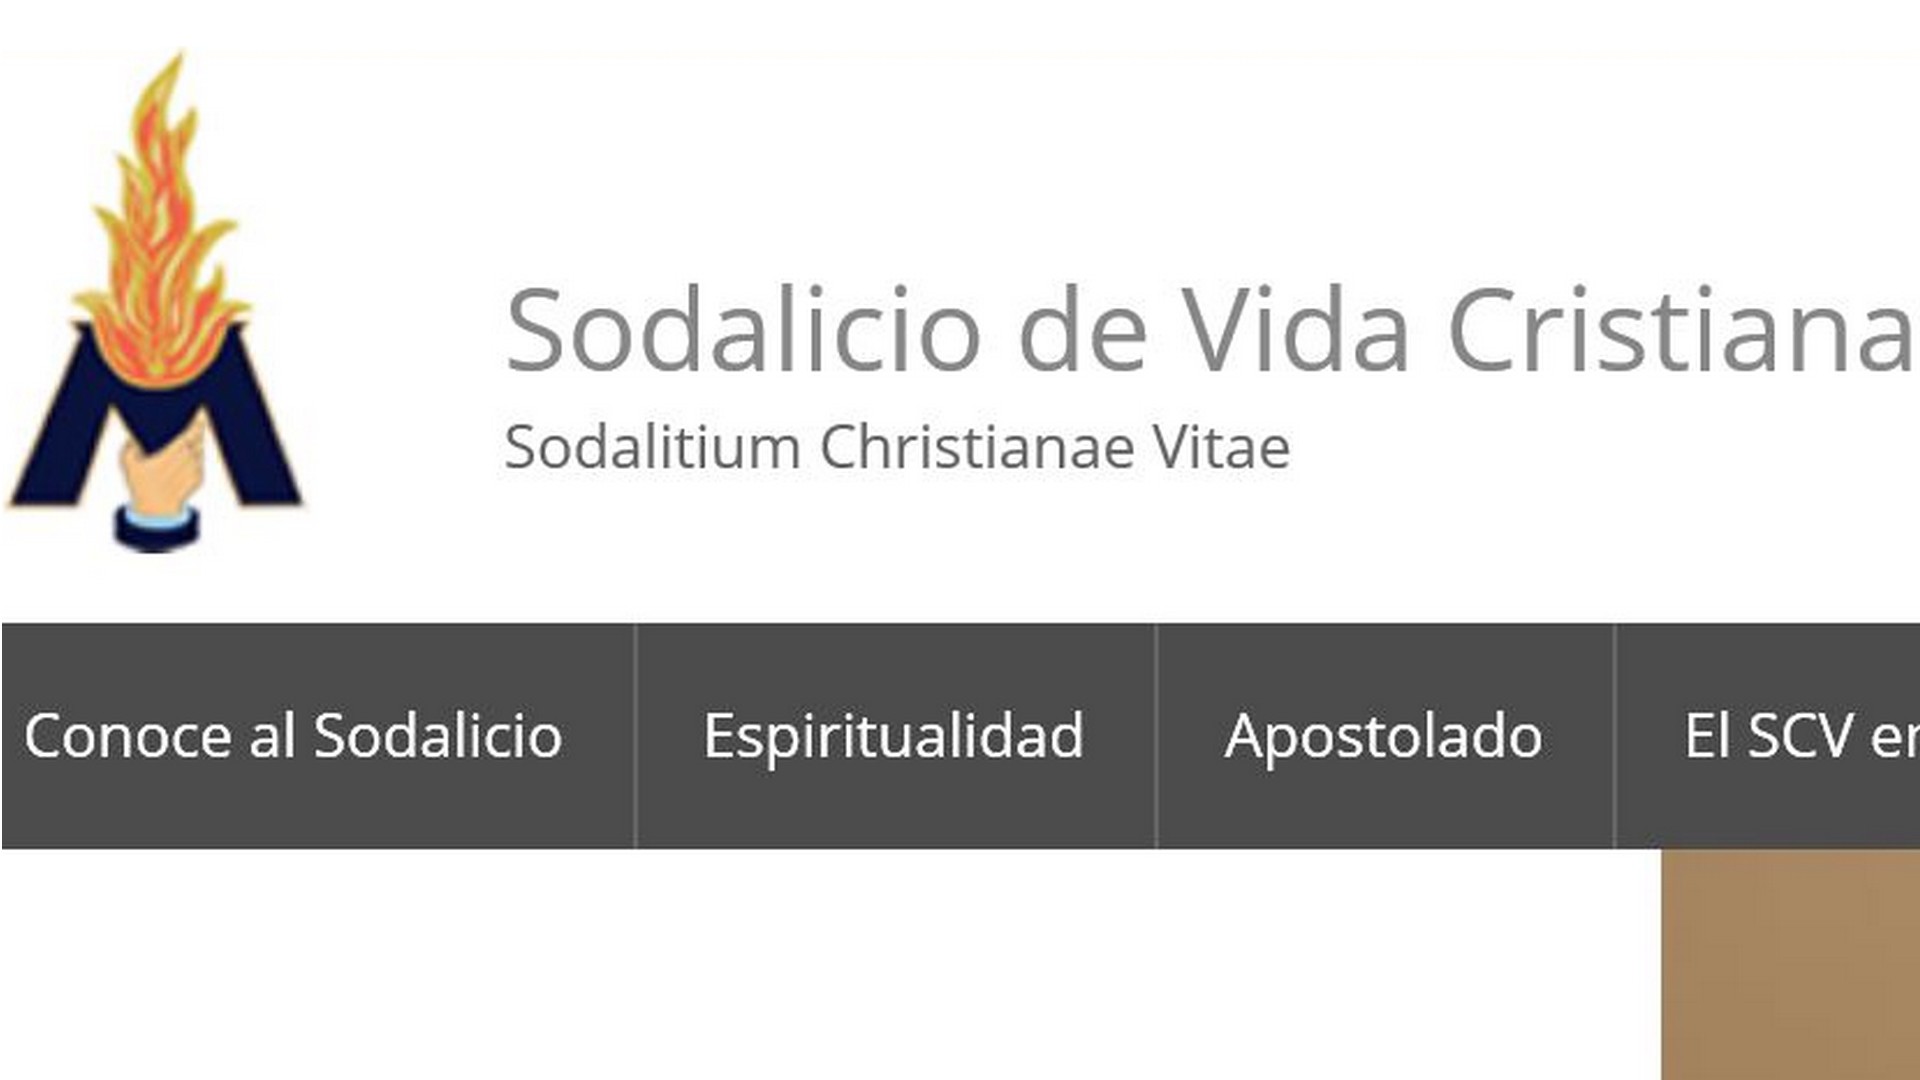 Le Sodalicio de Vida Cristiana est une société de vie apostolique fondée au Pérou en 1971